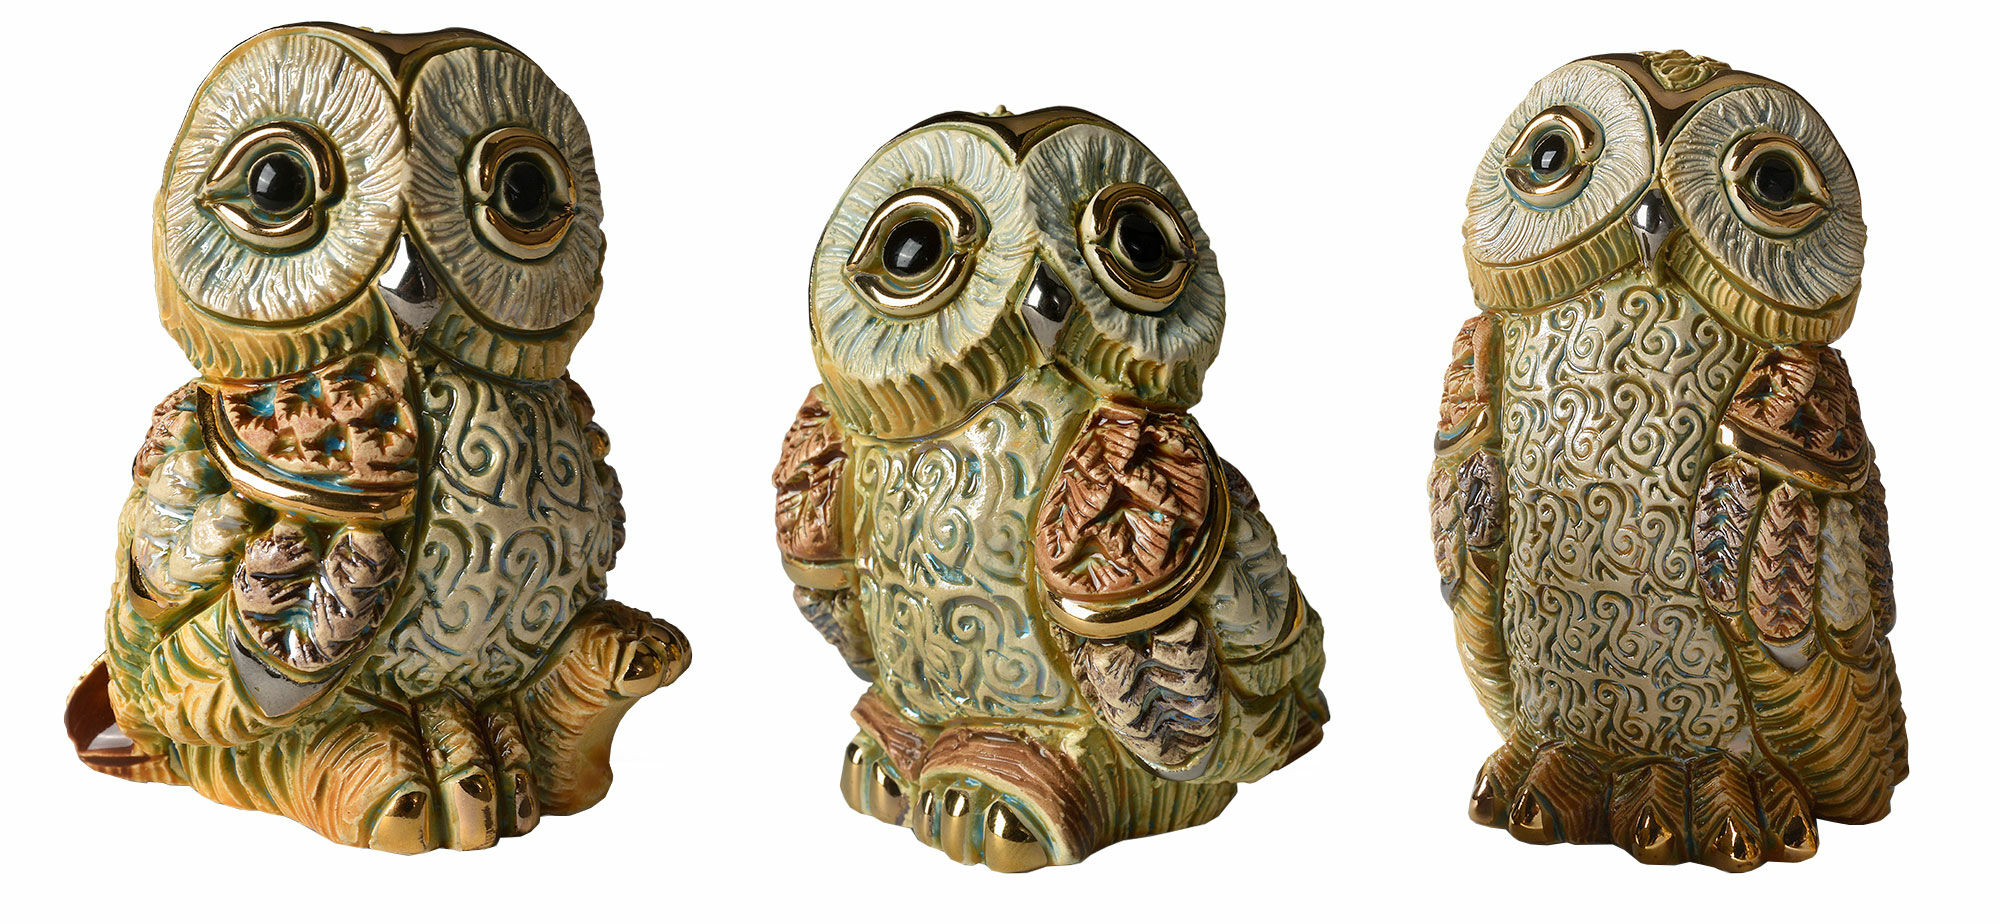 Ensemble de 3 figurines en céramique "Owl Family" (Famille de hiboux)